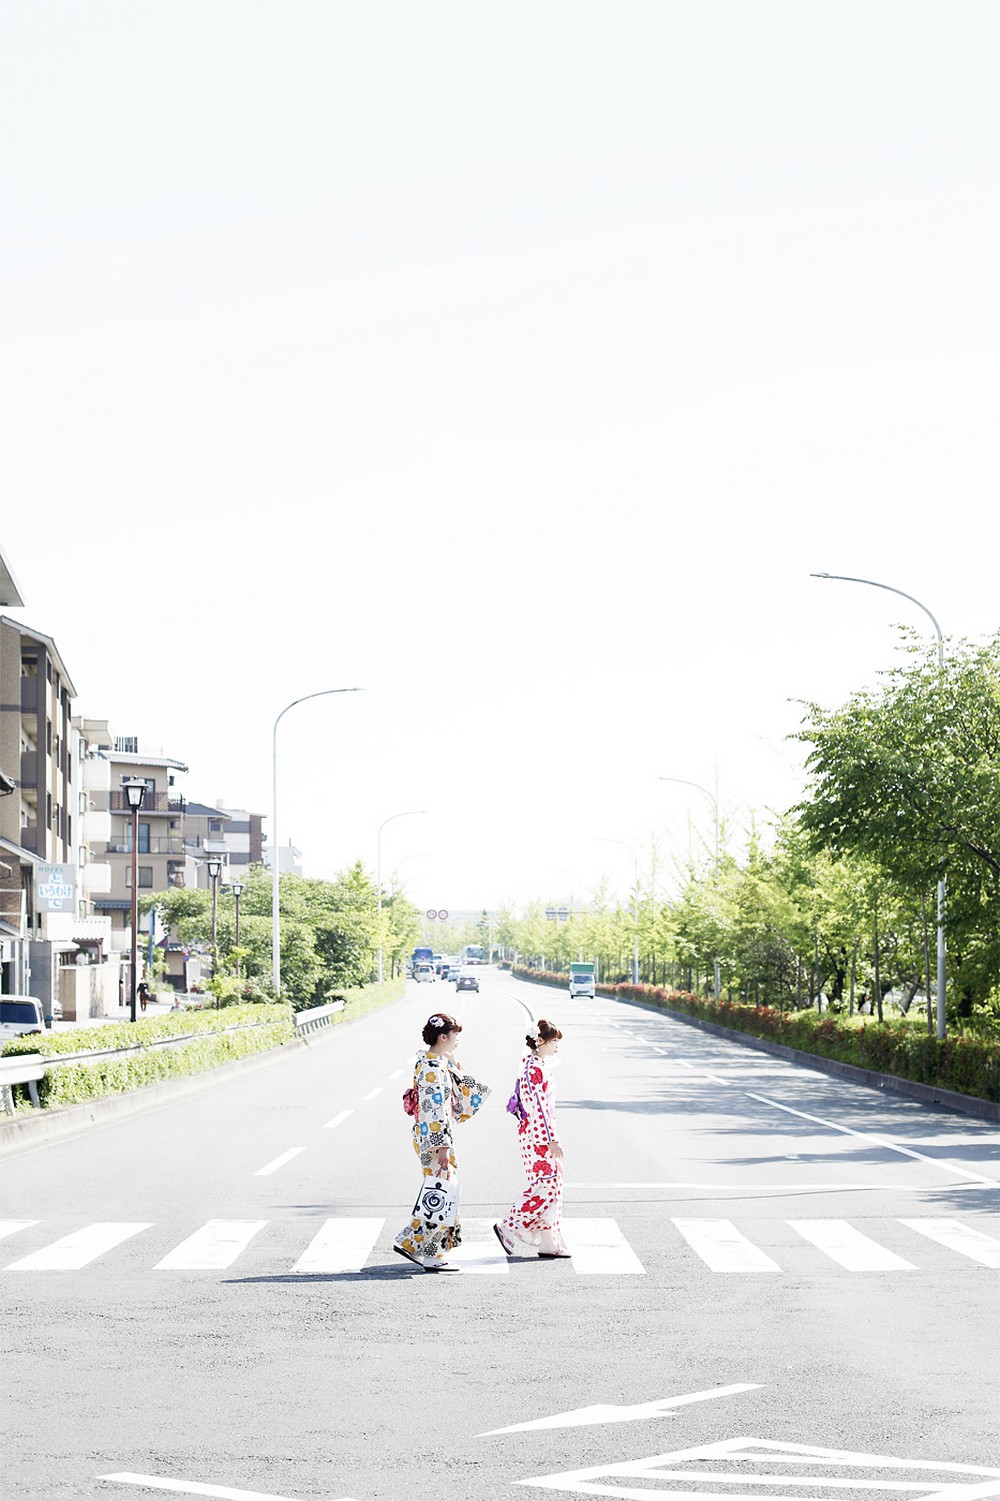 Повседневная жизнь в Японии от итальянского фотографа Массимо Колонна